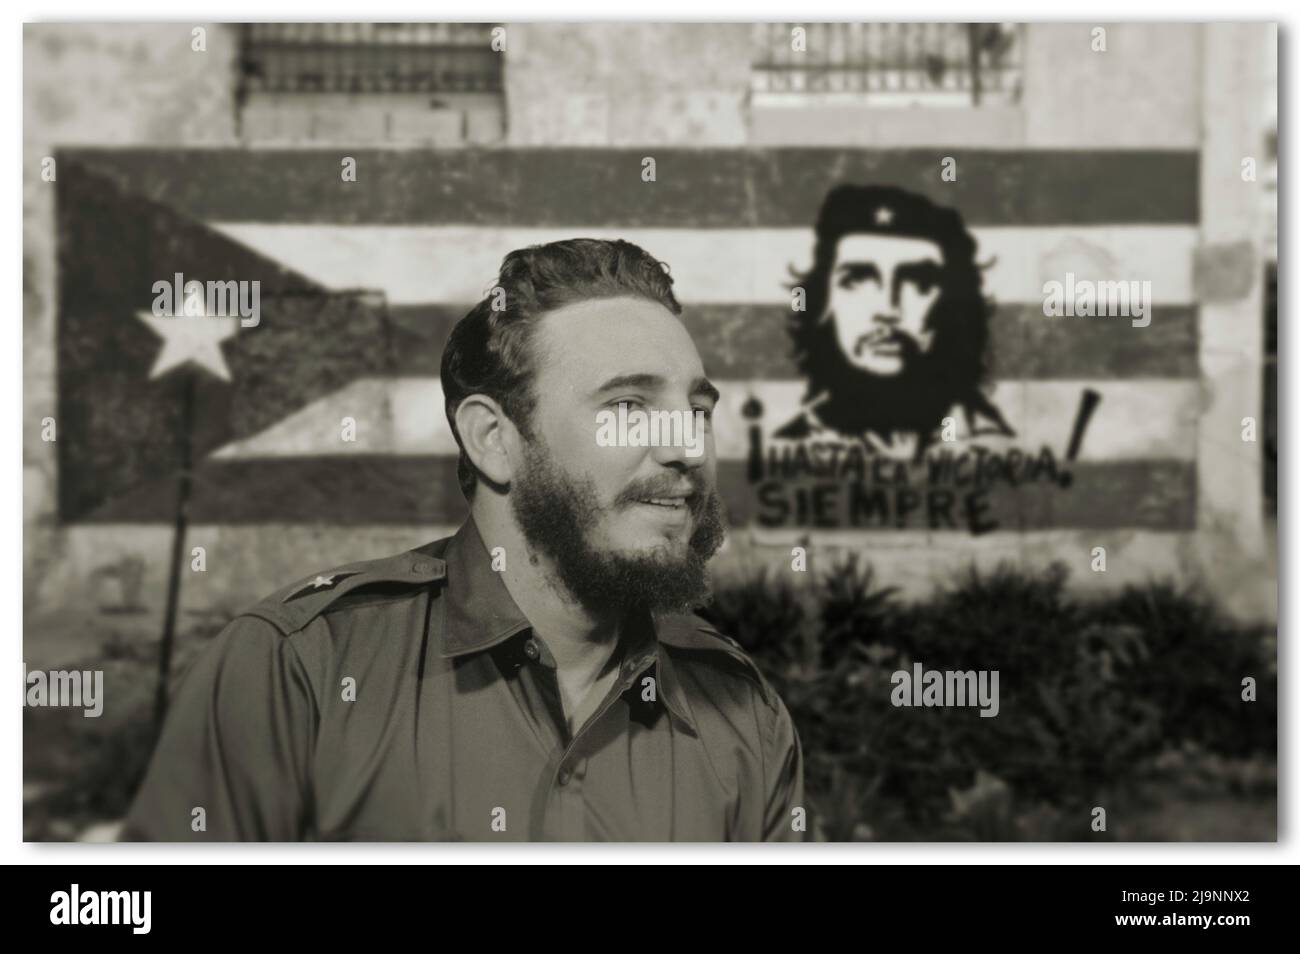 Une photo de Fidel Castro, chef de la révolution cubaine, sur fond de peinture murale sur laquelle le commandant Che Guevara est peint. Banque D'Images